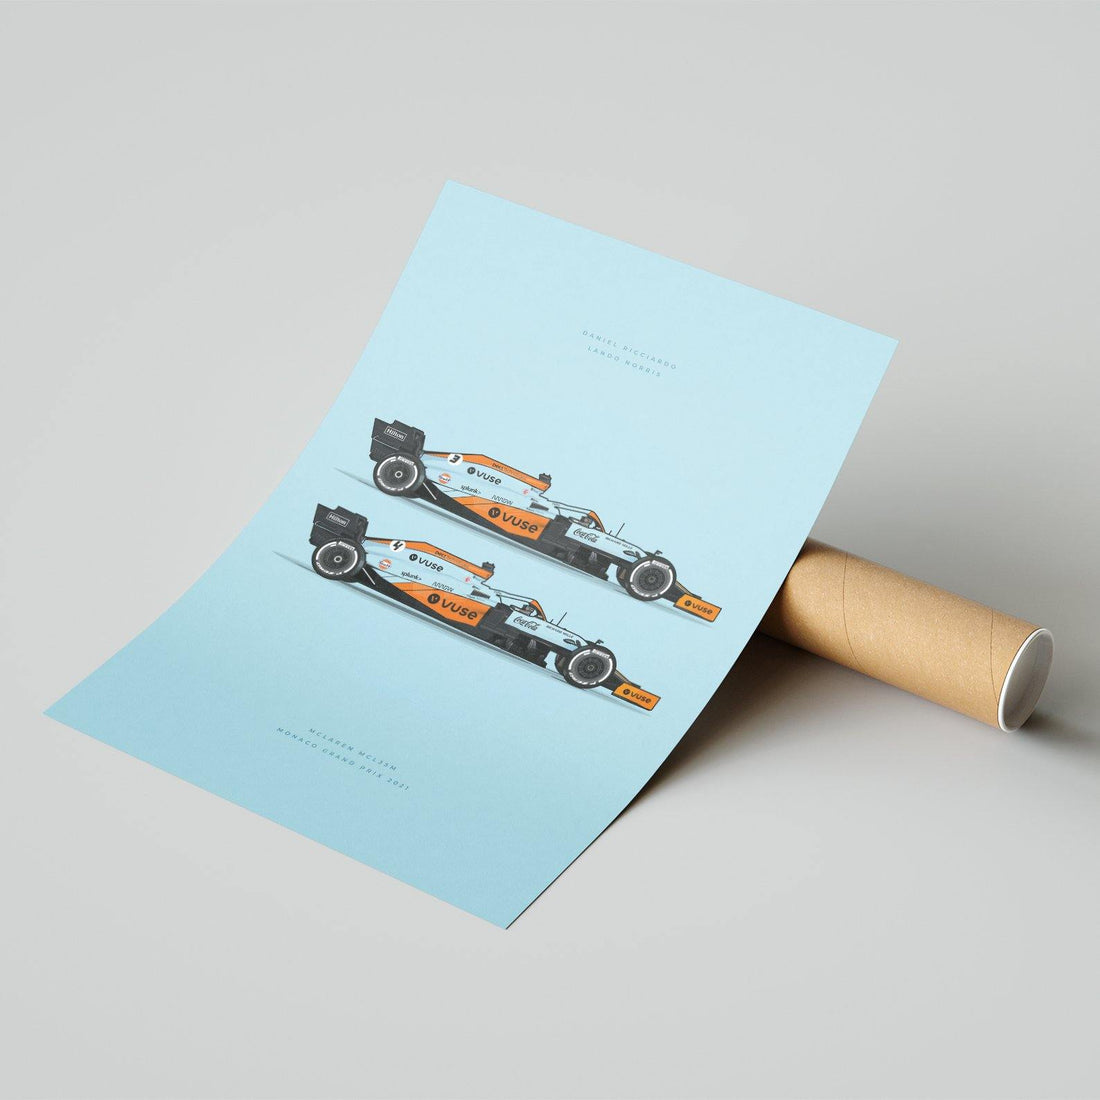 McLaren Monaco Edition MCL35M 2021 Formula 1 Car Print